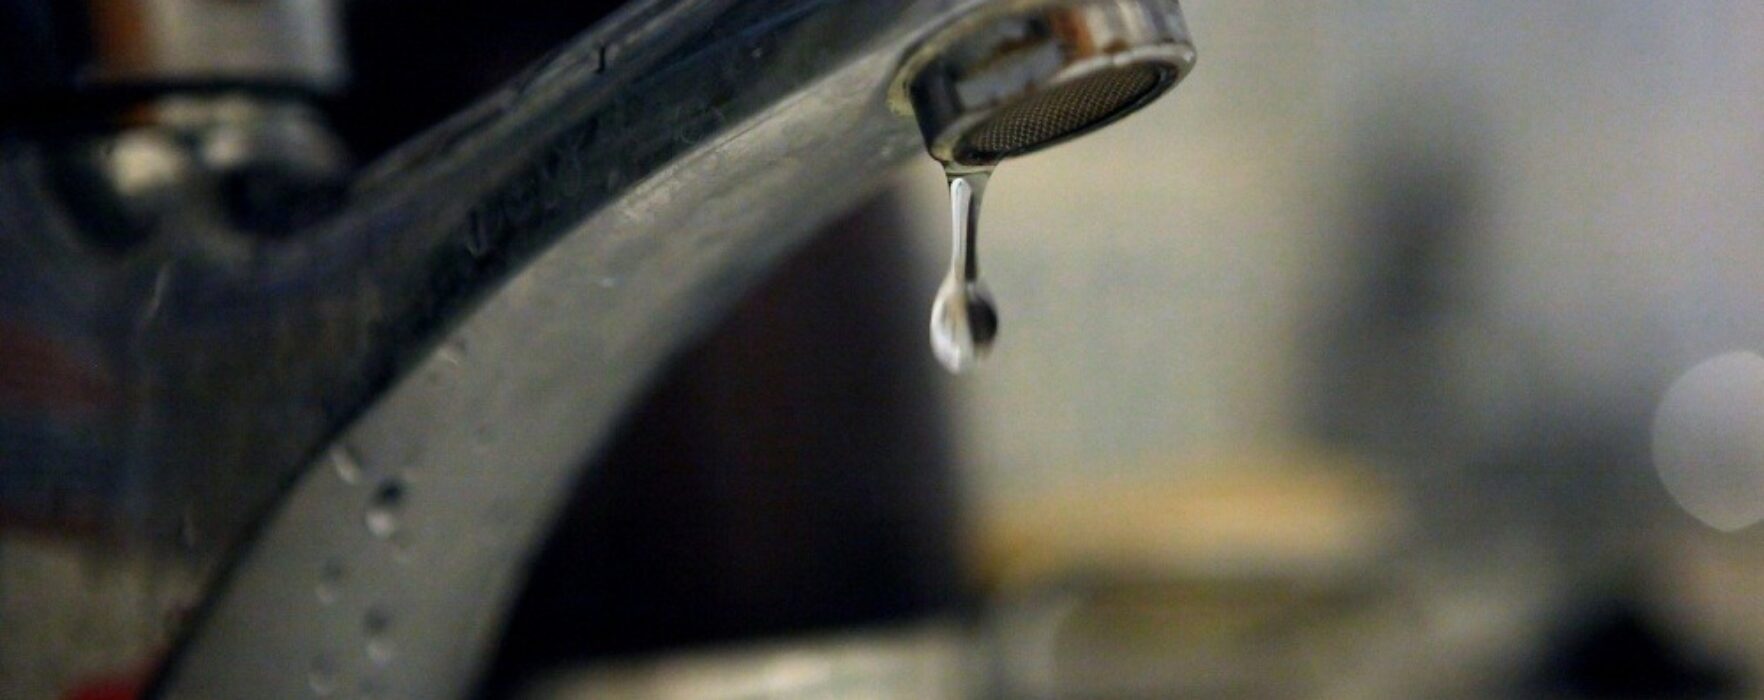 Cetăţenii din Aninoasa, sfătuiţi să nu consume apă din sistemul public de alimentare